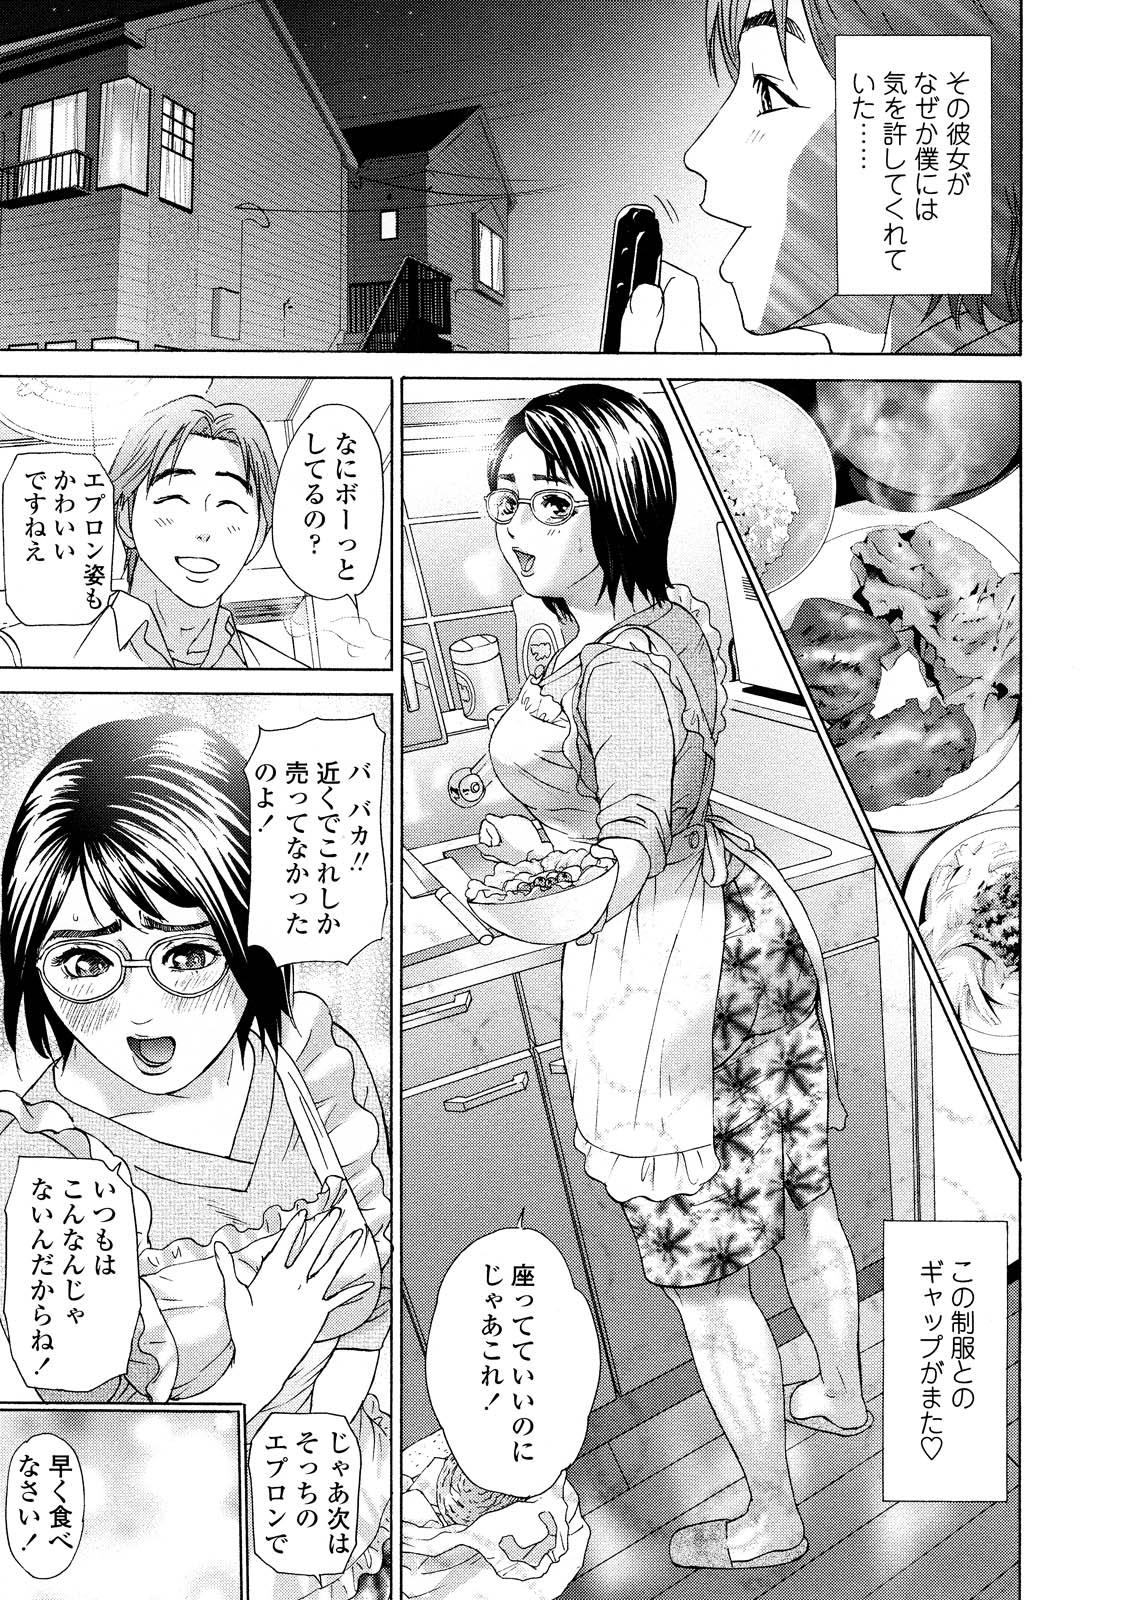 18 Year Old Asemizu Onna Girlfriend - Page 9